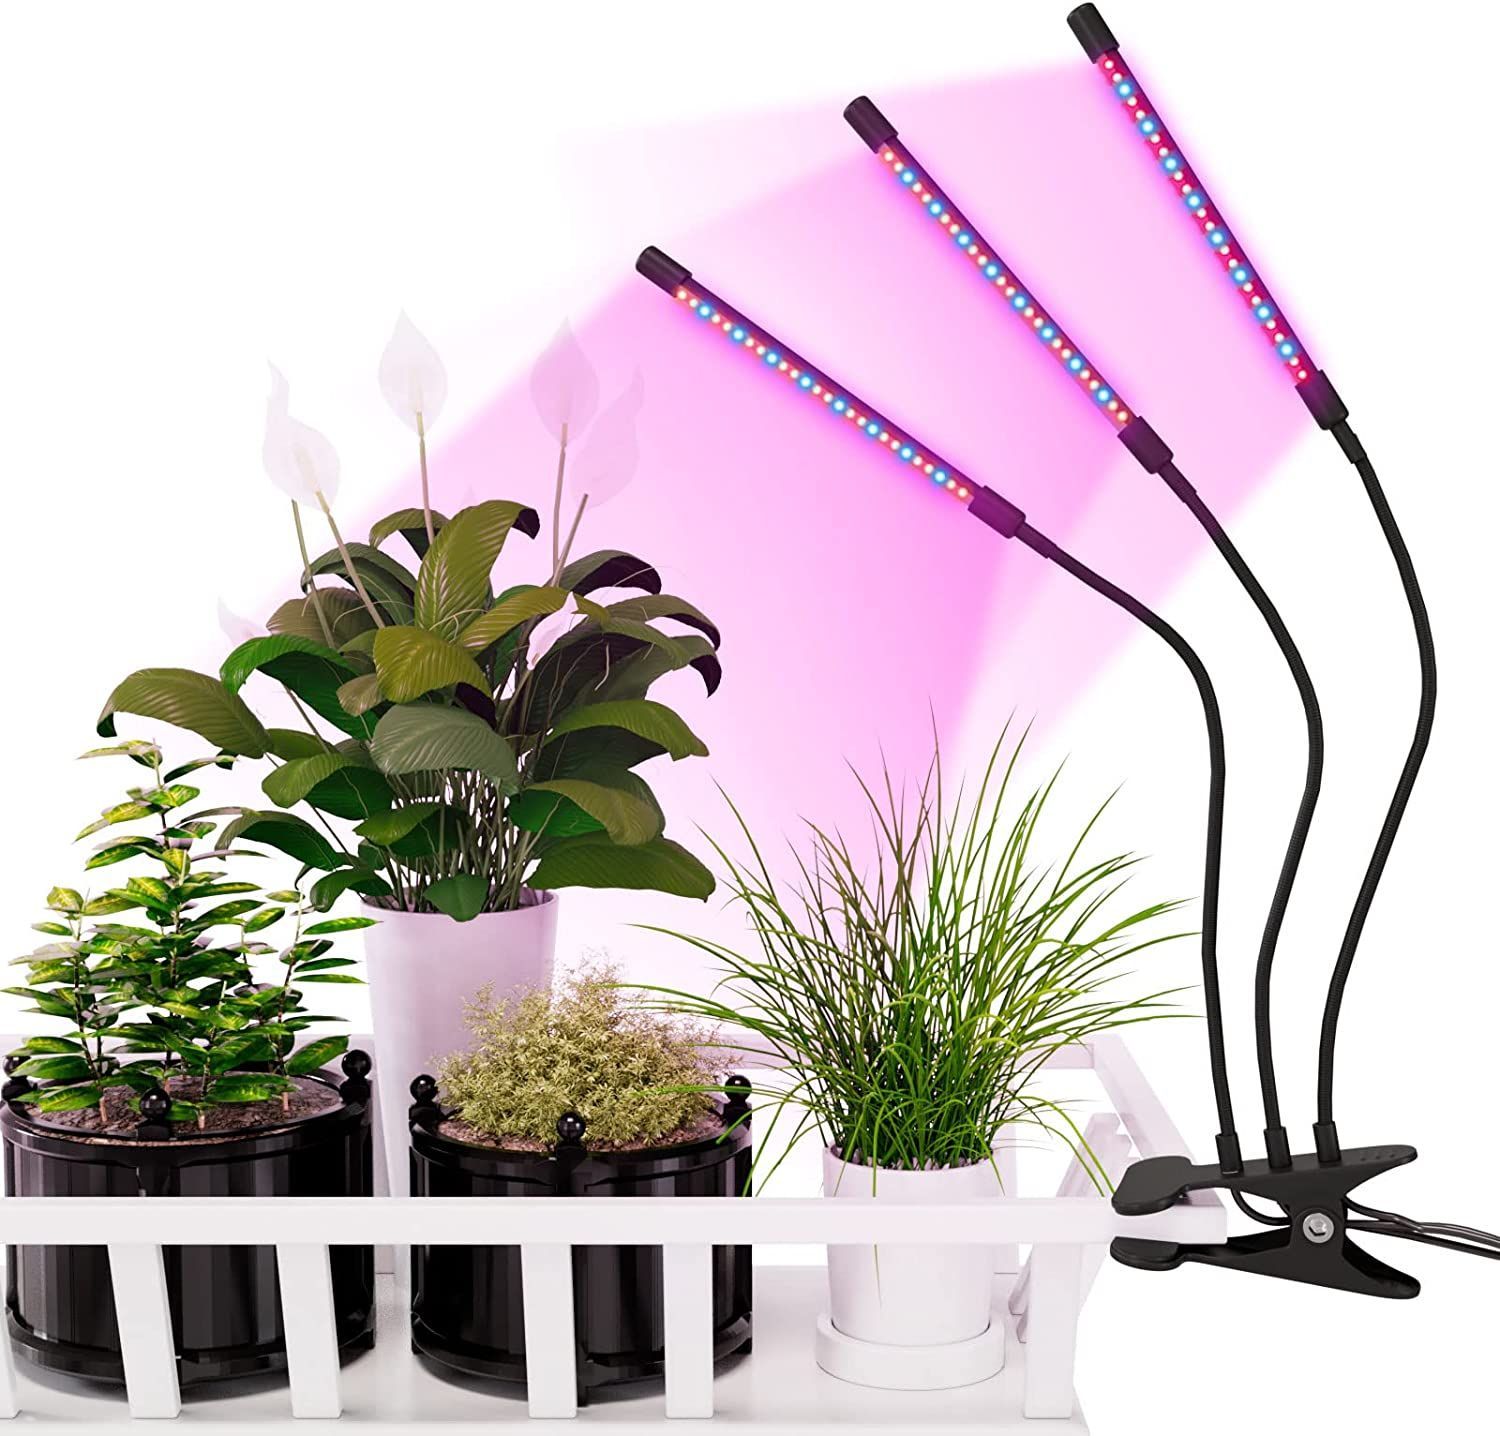 公式の greensindoor植物育成ライトパネル600W 園芸用品